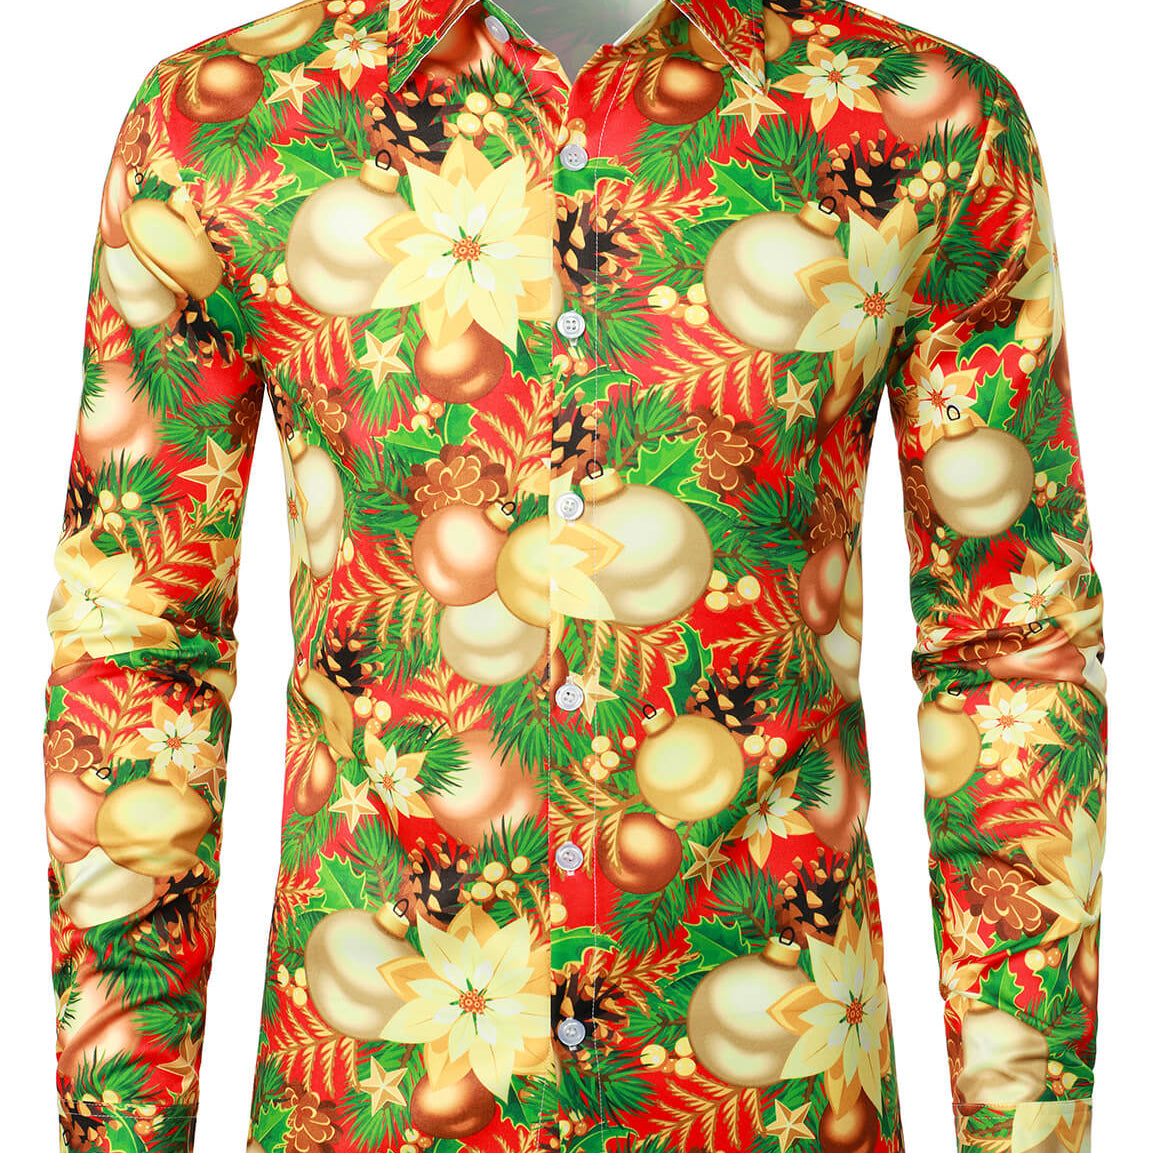 Camisa de manga larga con botones brillantes y estampado floral para fiesta navideña para hombre